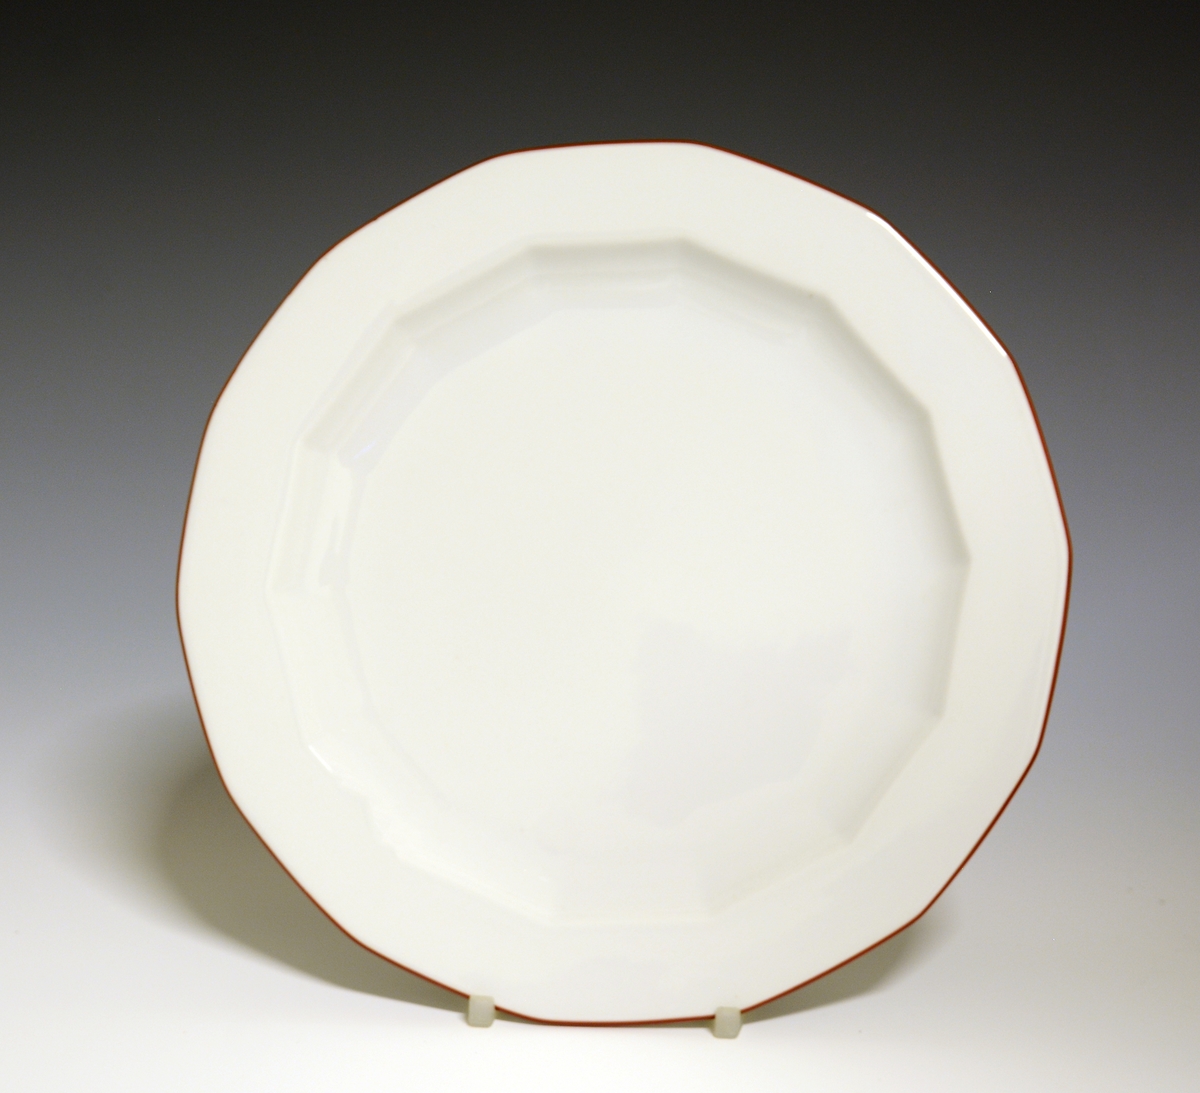 Mangekantet tallerken av porselen med hvit glasur. Dekorert med rød strek ytterst på fanen. 
Modell: Octavia, tegnet av Grete Rønning i 1977.
Dekor: Rød Strek